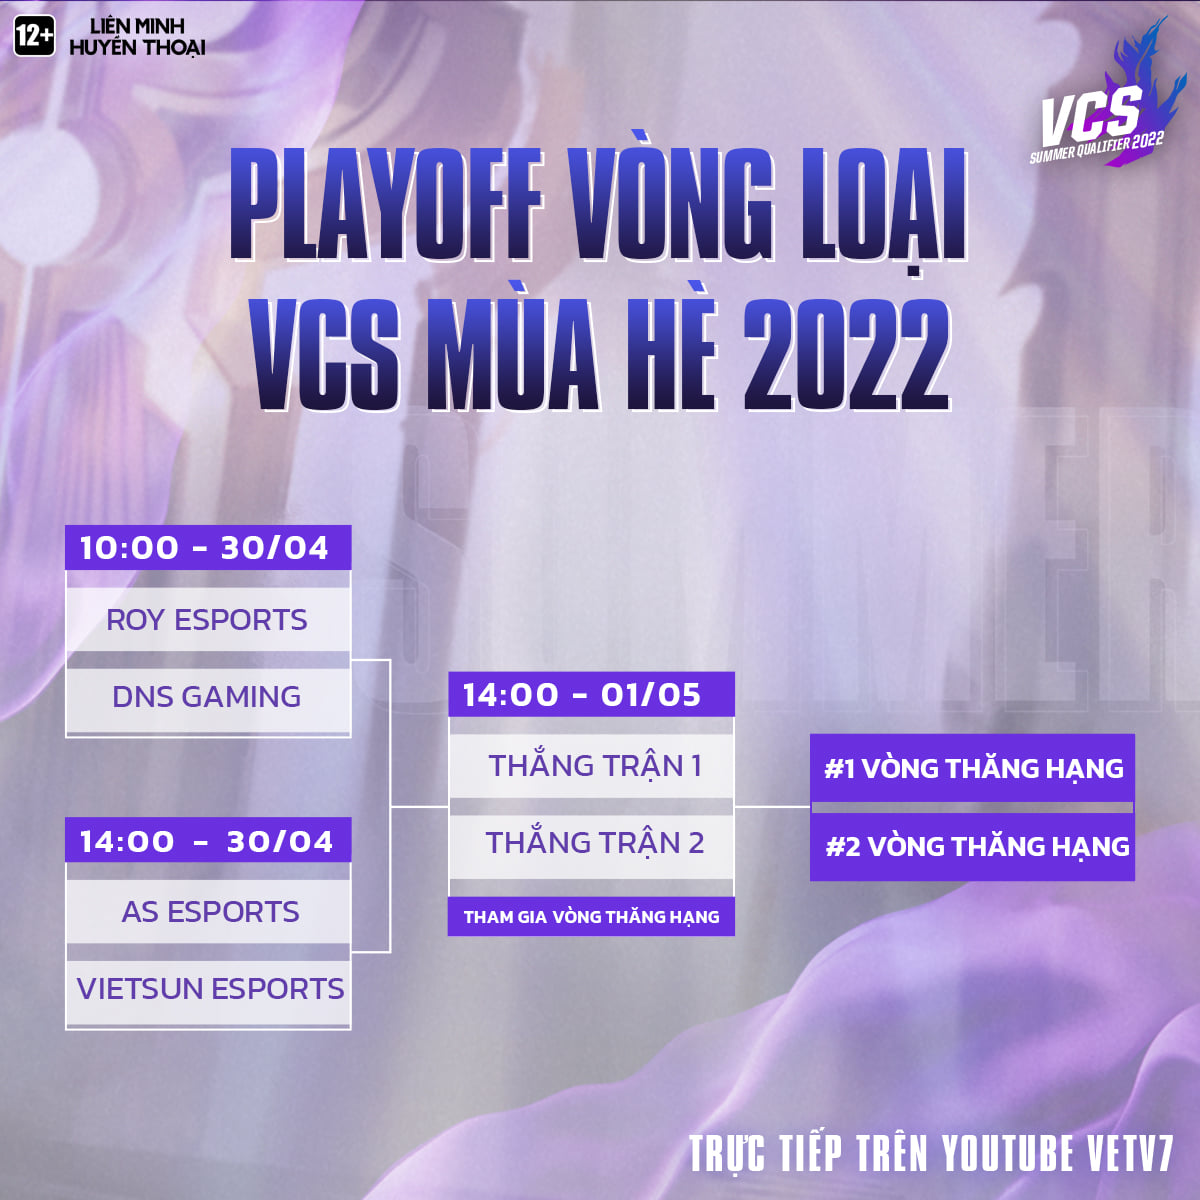 Lịch thi đấu dự kiến của các cặp trận Playoff Vòng loại VCS Mùa Hè 2022 trước khi DNS Gaming bị loại